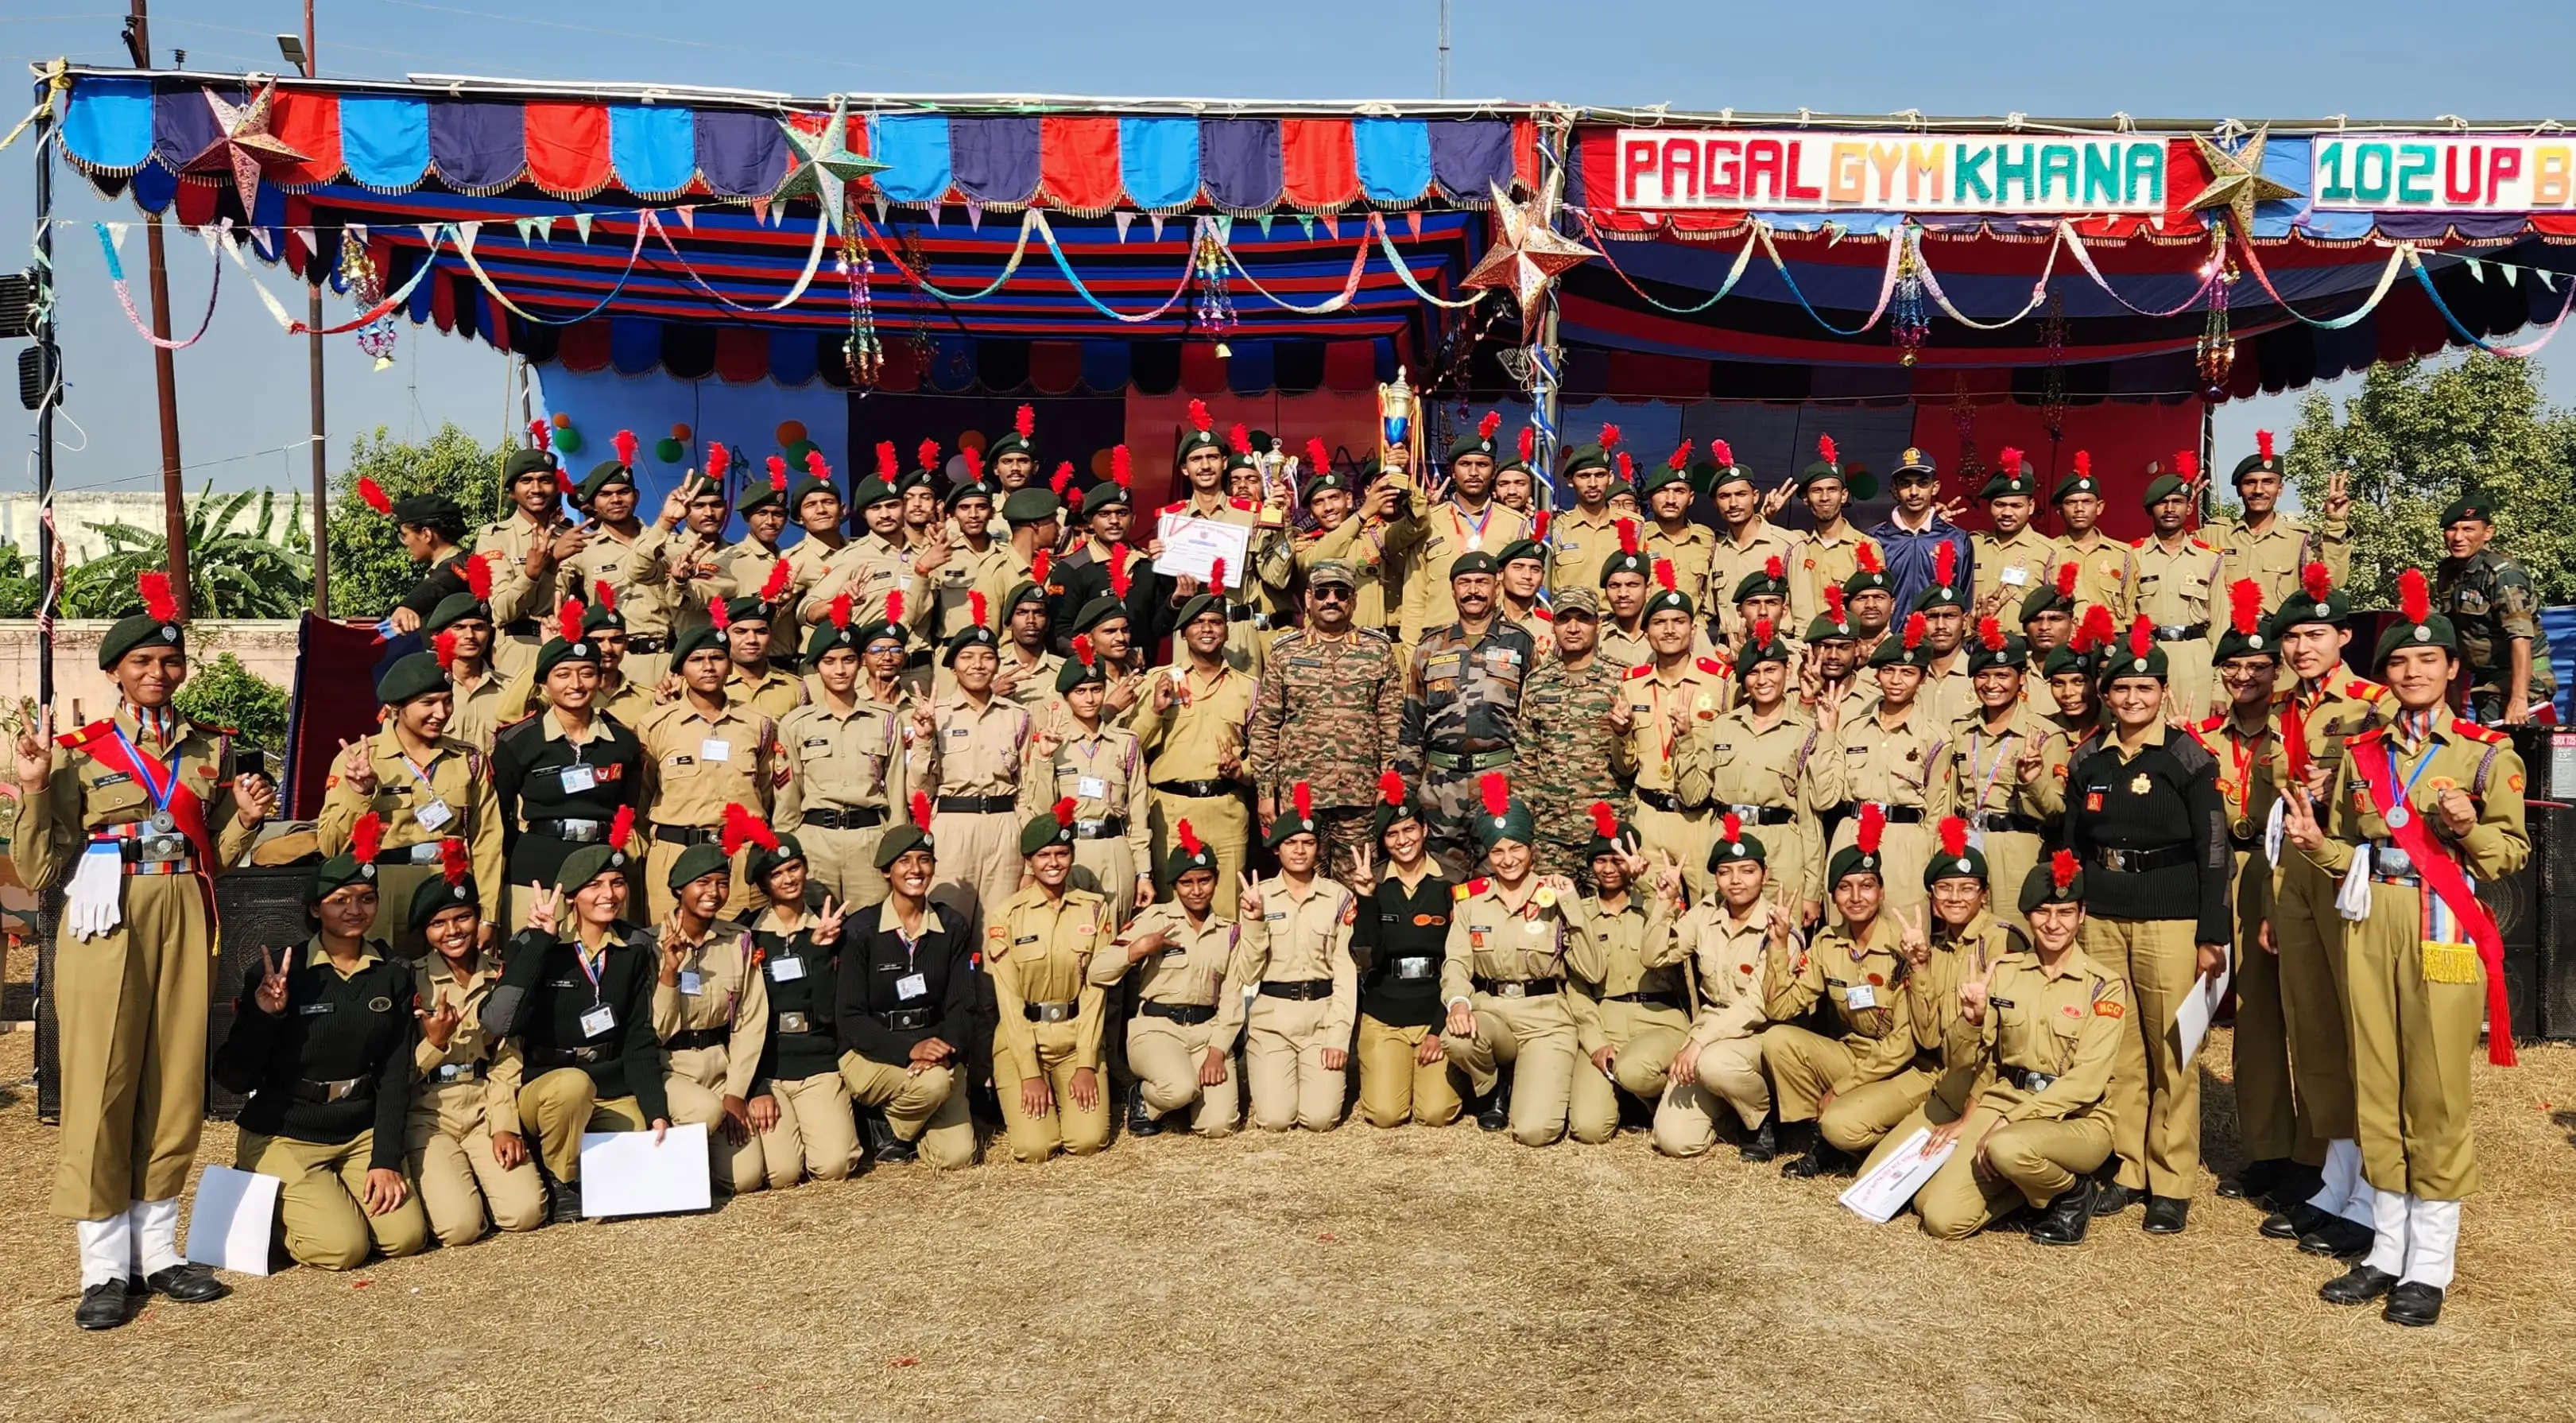 उत्तर प्रदेश एनसीसी निदेशालय द्वारा आयोजित "एक भारत श्रेष्ठ भारत" राष्ट्रीय शिविर